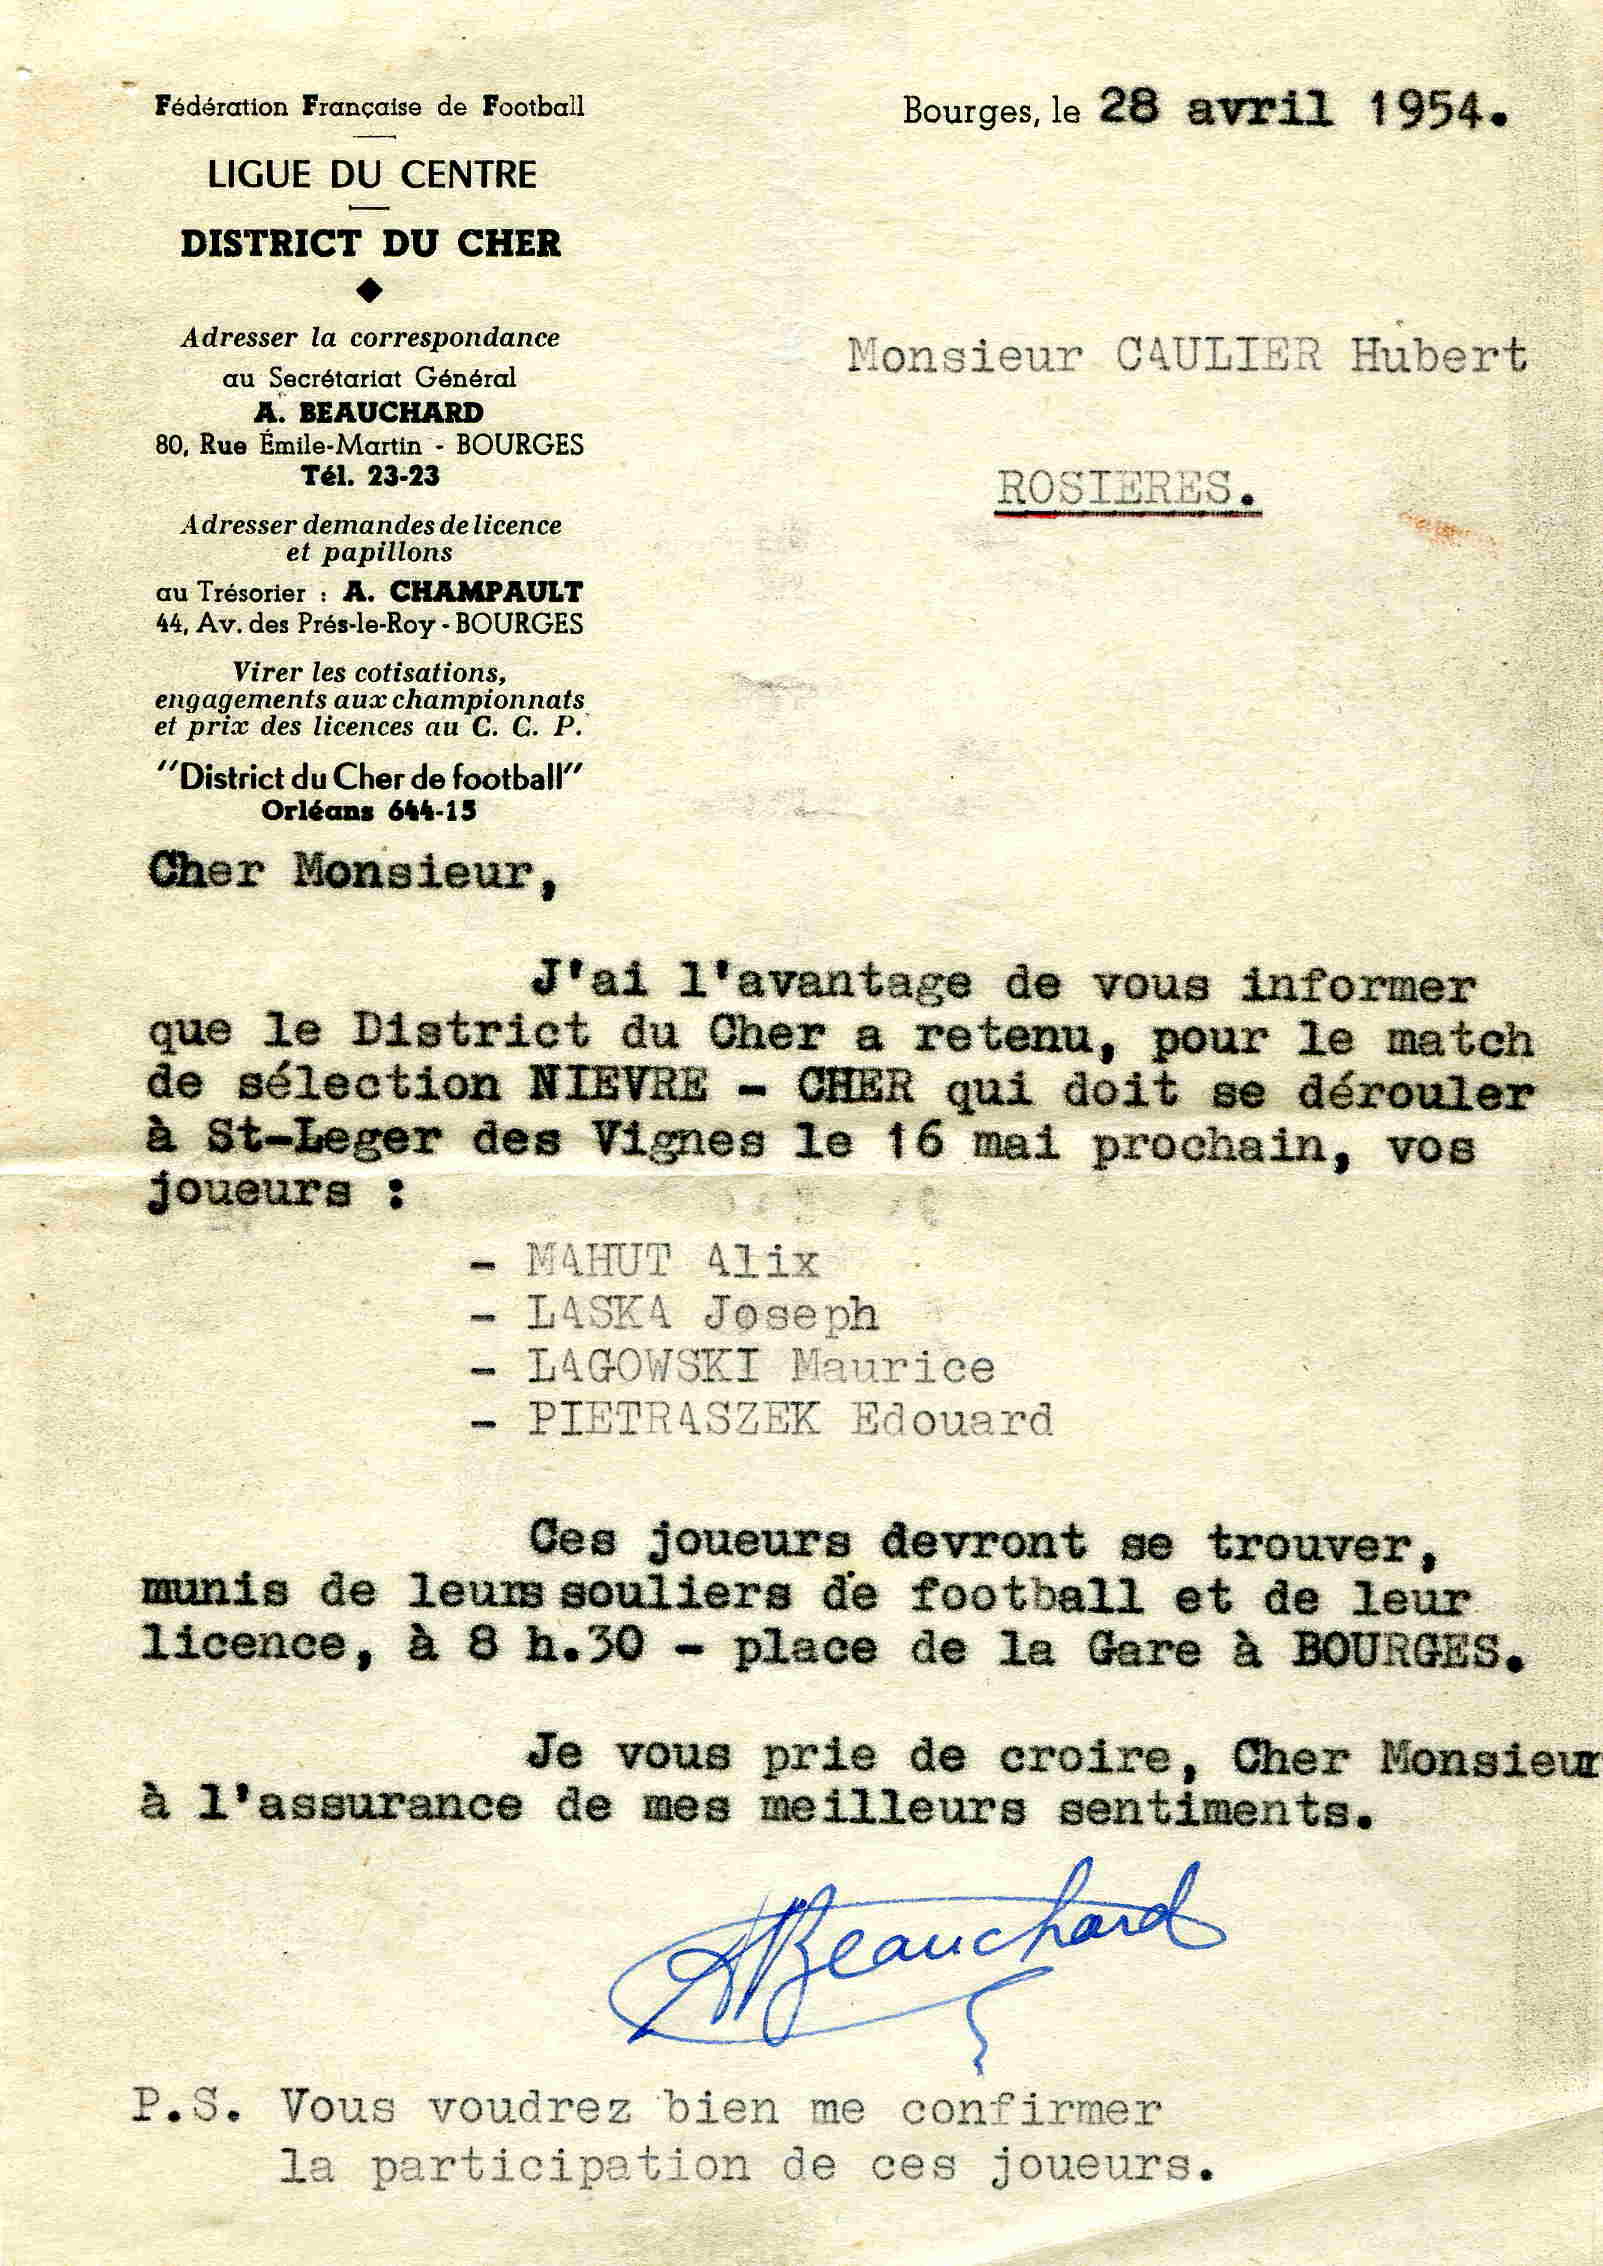 Sélectionnés rosièrois du 16/05/54 contre la Nièvre